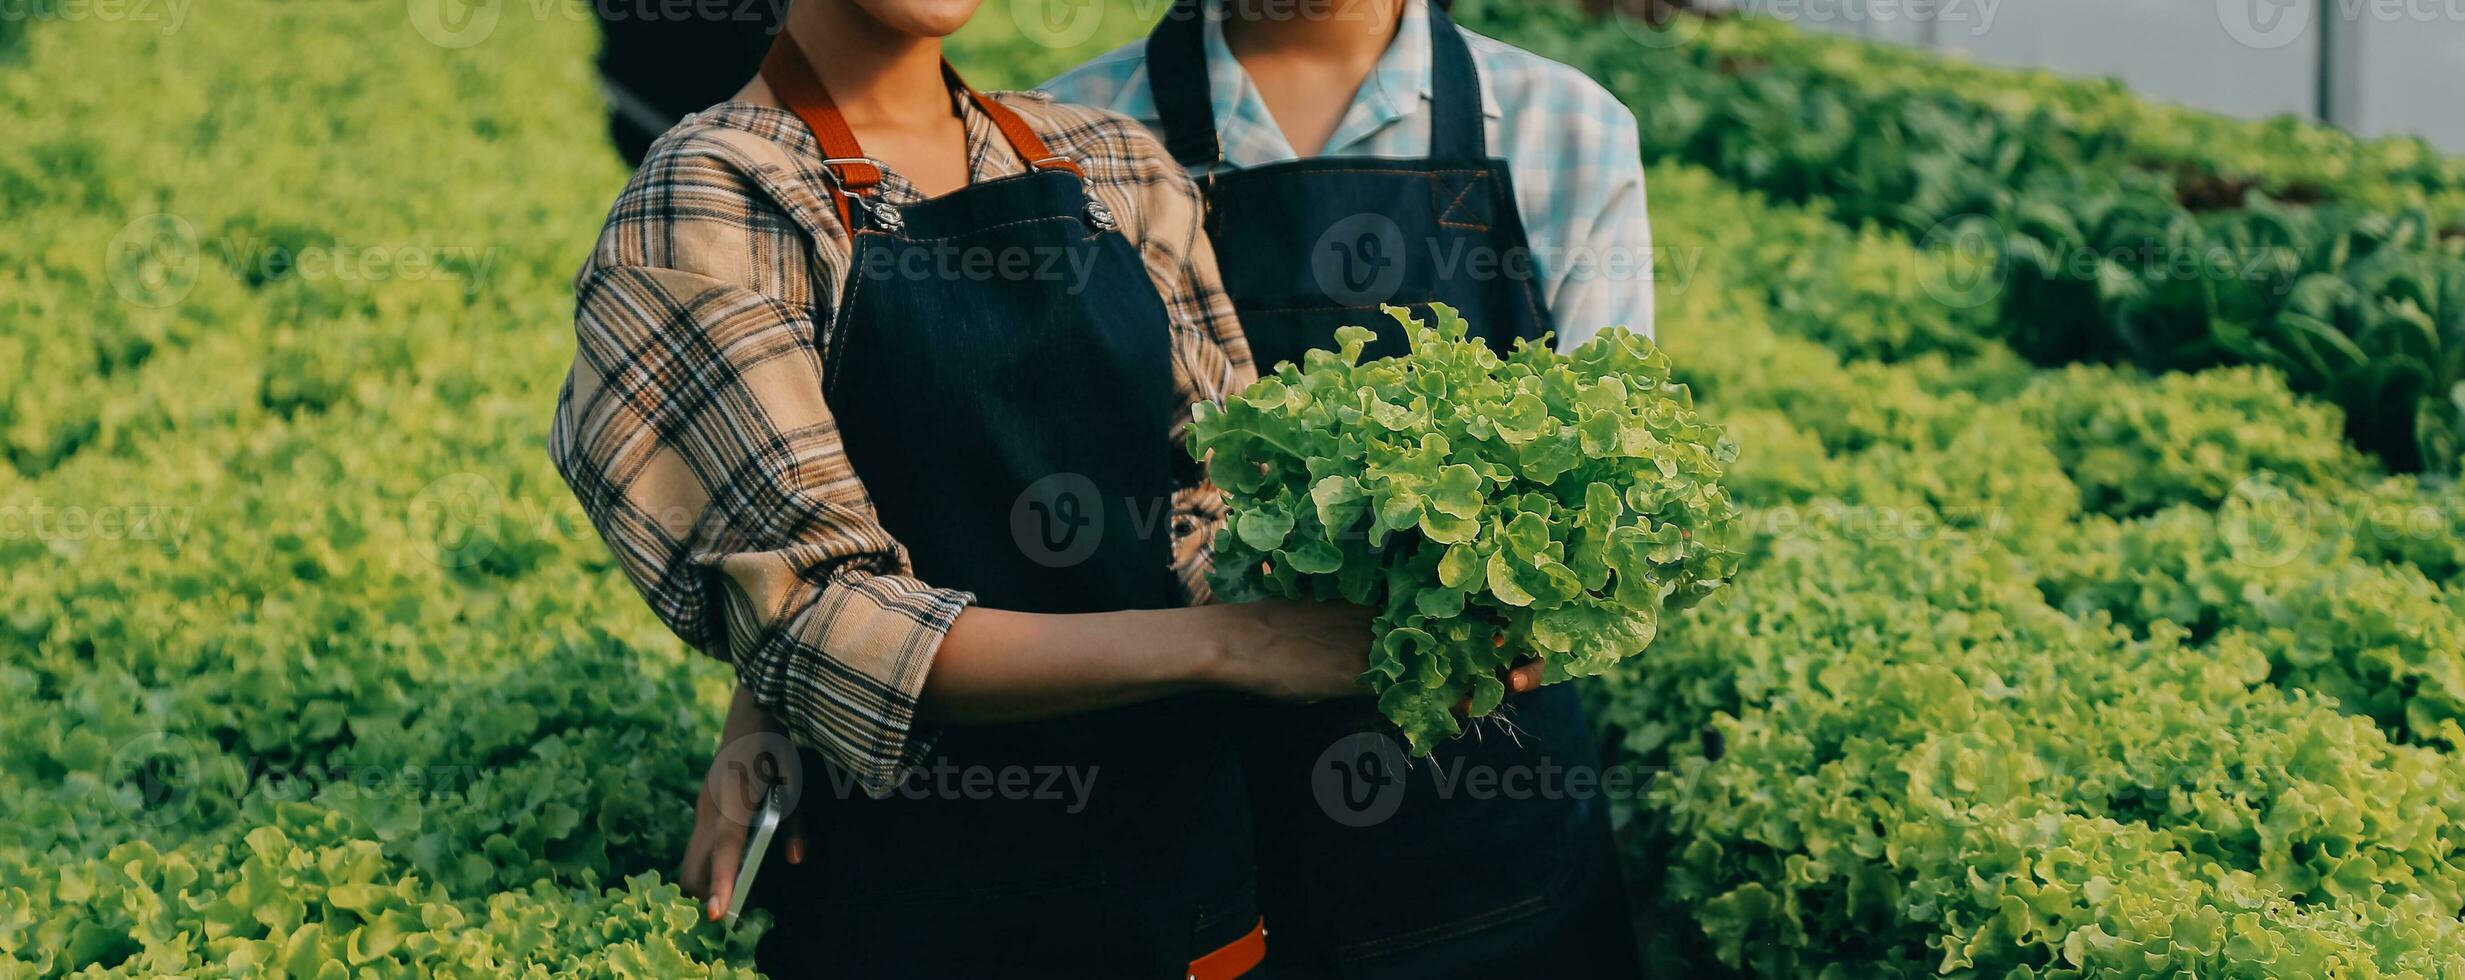 femme jardinier inspecte qualité de vert chêne salade dans serre jardinage. femelle asiatique horticulture agriculteur cultiver en bonne santé nutrition biologique salade des légumes dans hydroponique secteur agroalimentaire cultiver. photo